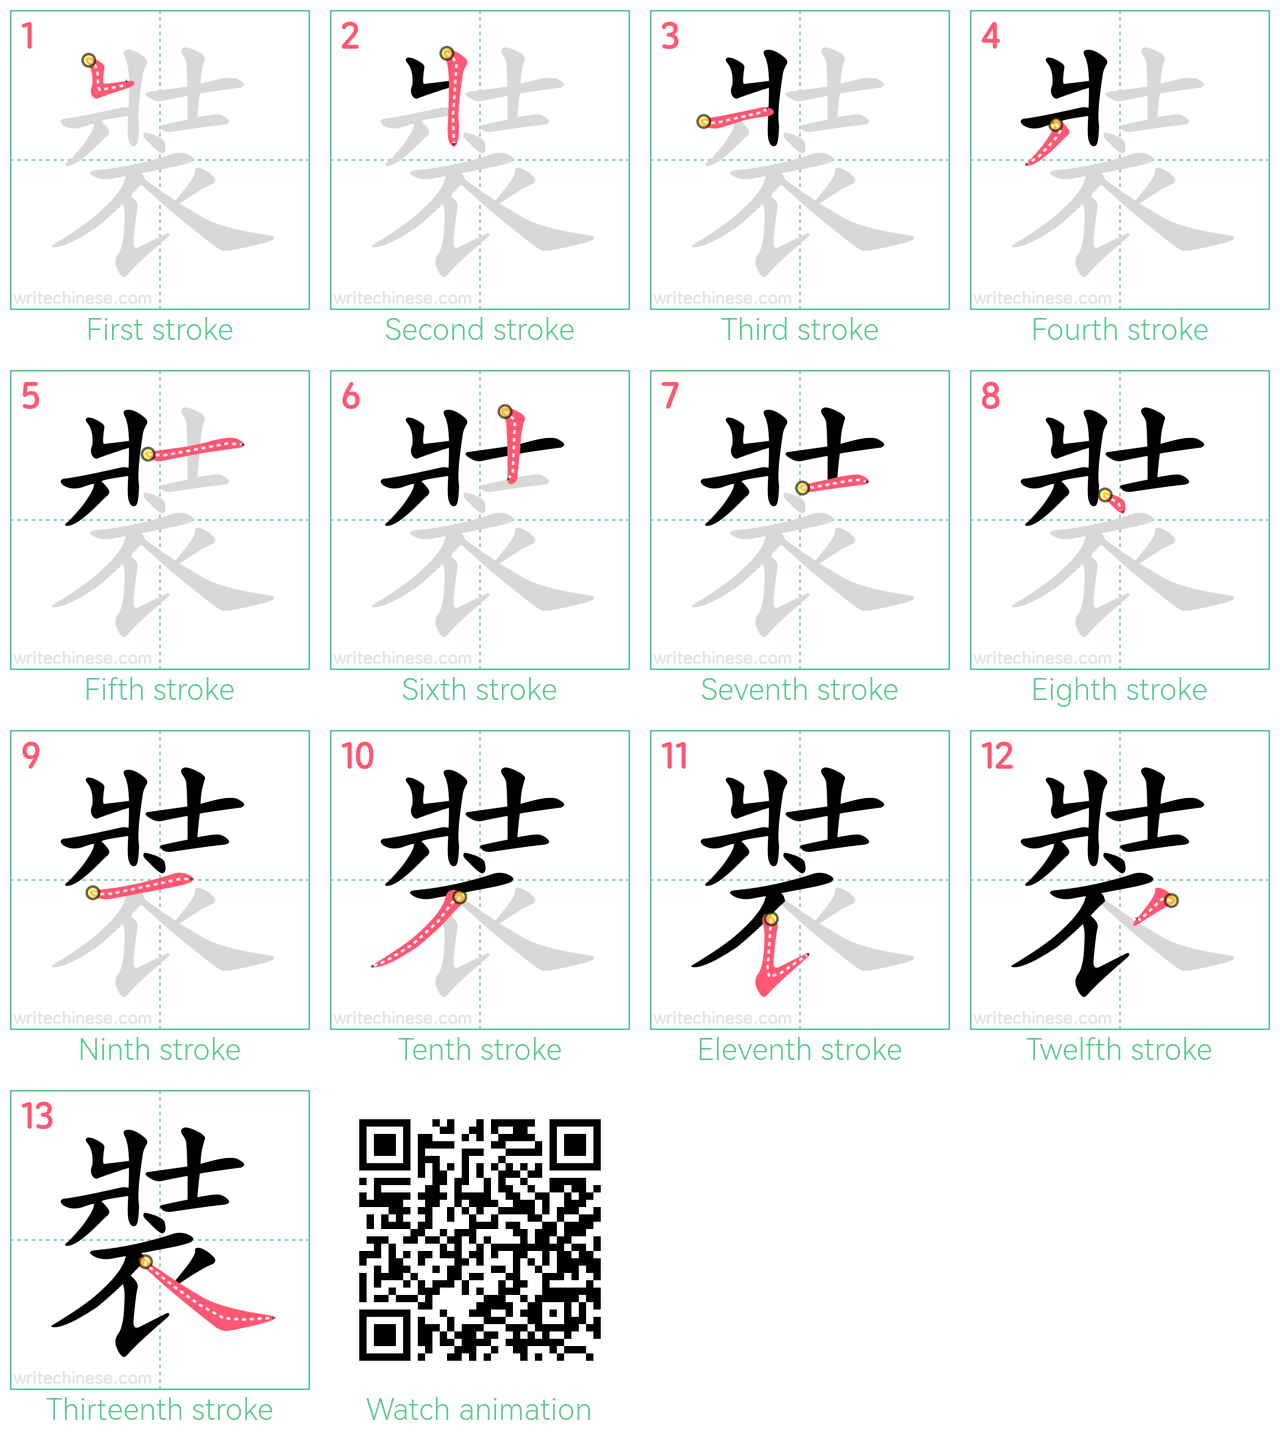 裝 step-by-step stroke order diagrams